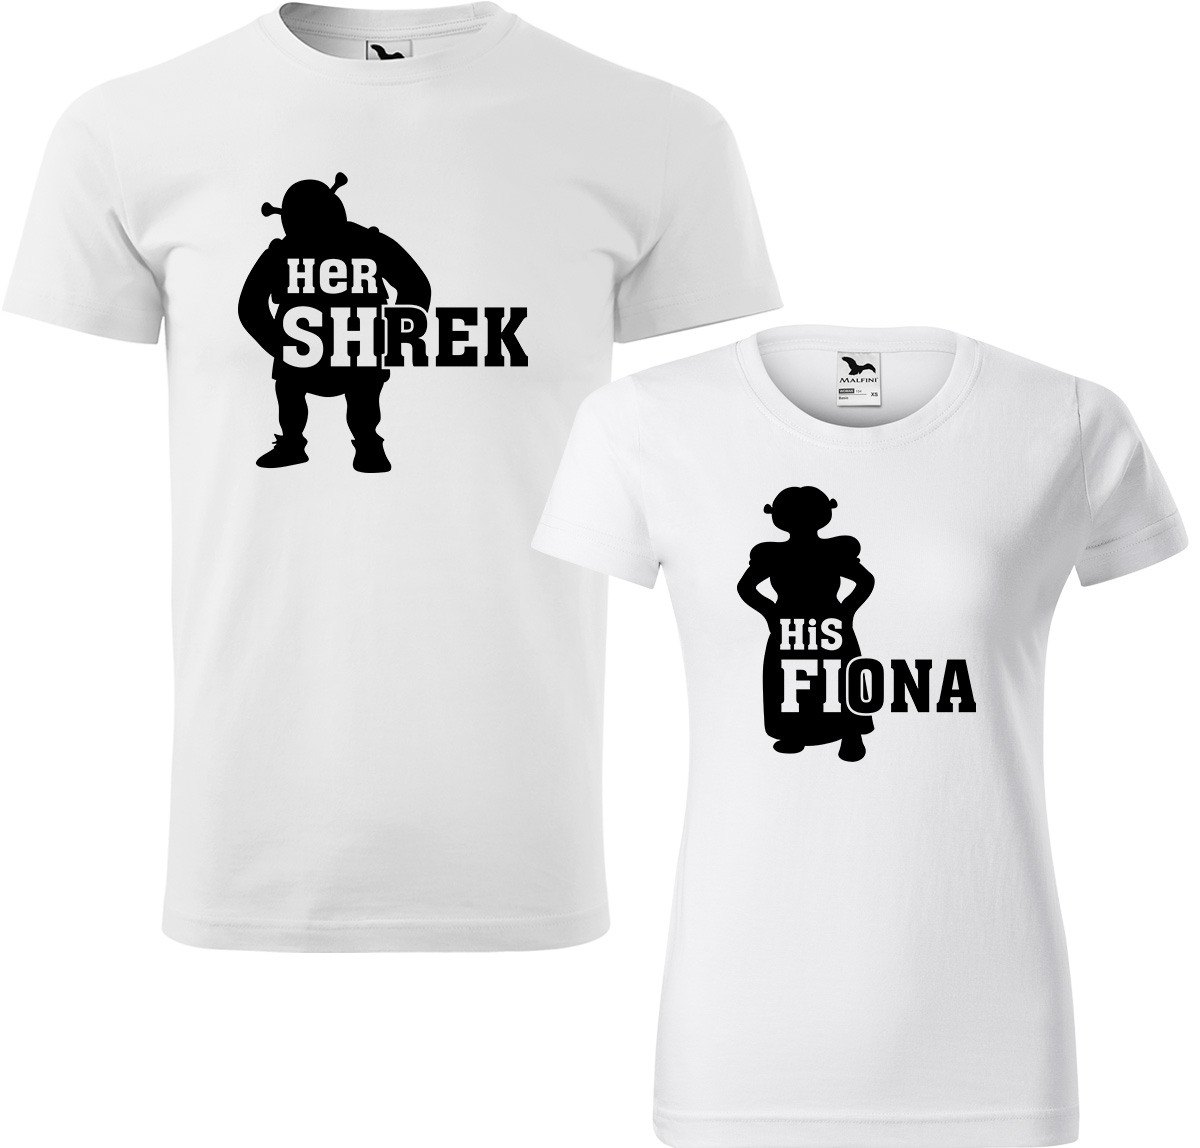 Trička pro páry - Shrek a Fiona Barva: Bílá (00), Velikost dámské tričko: M, Velikost pánské tričko: XL